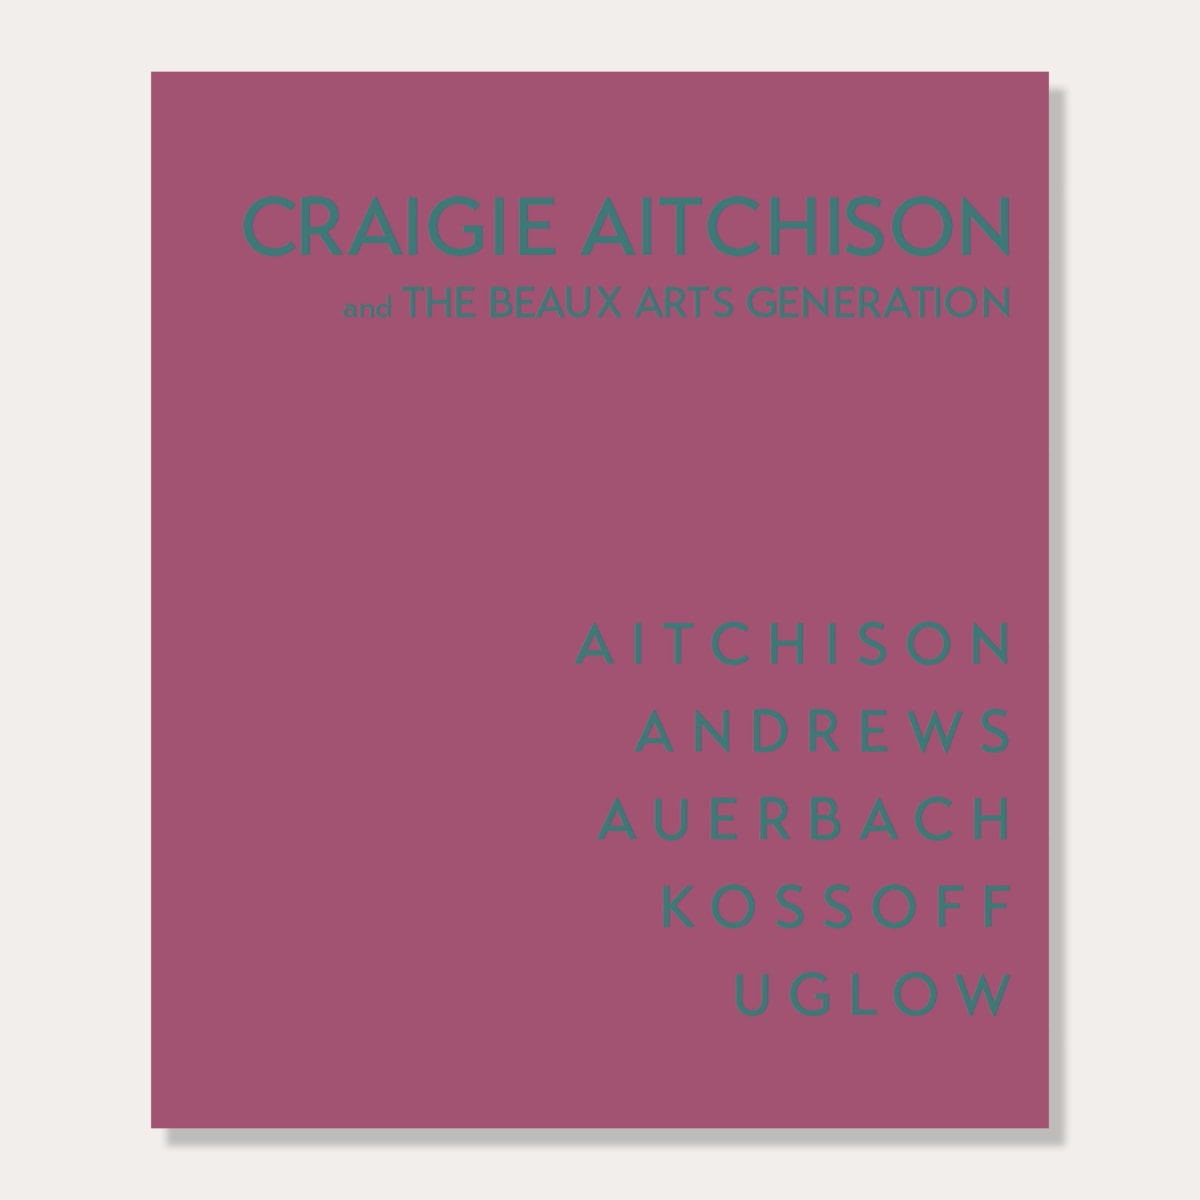 Craigie Aitchison